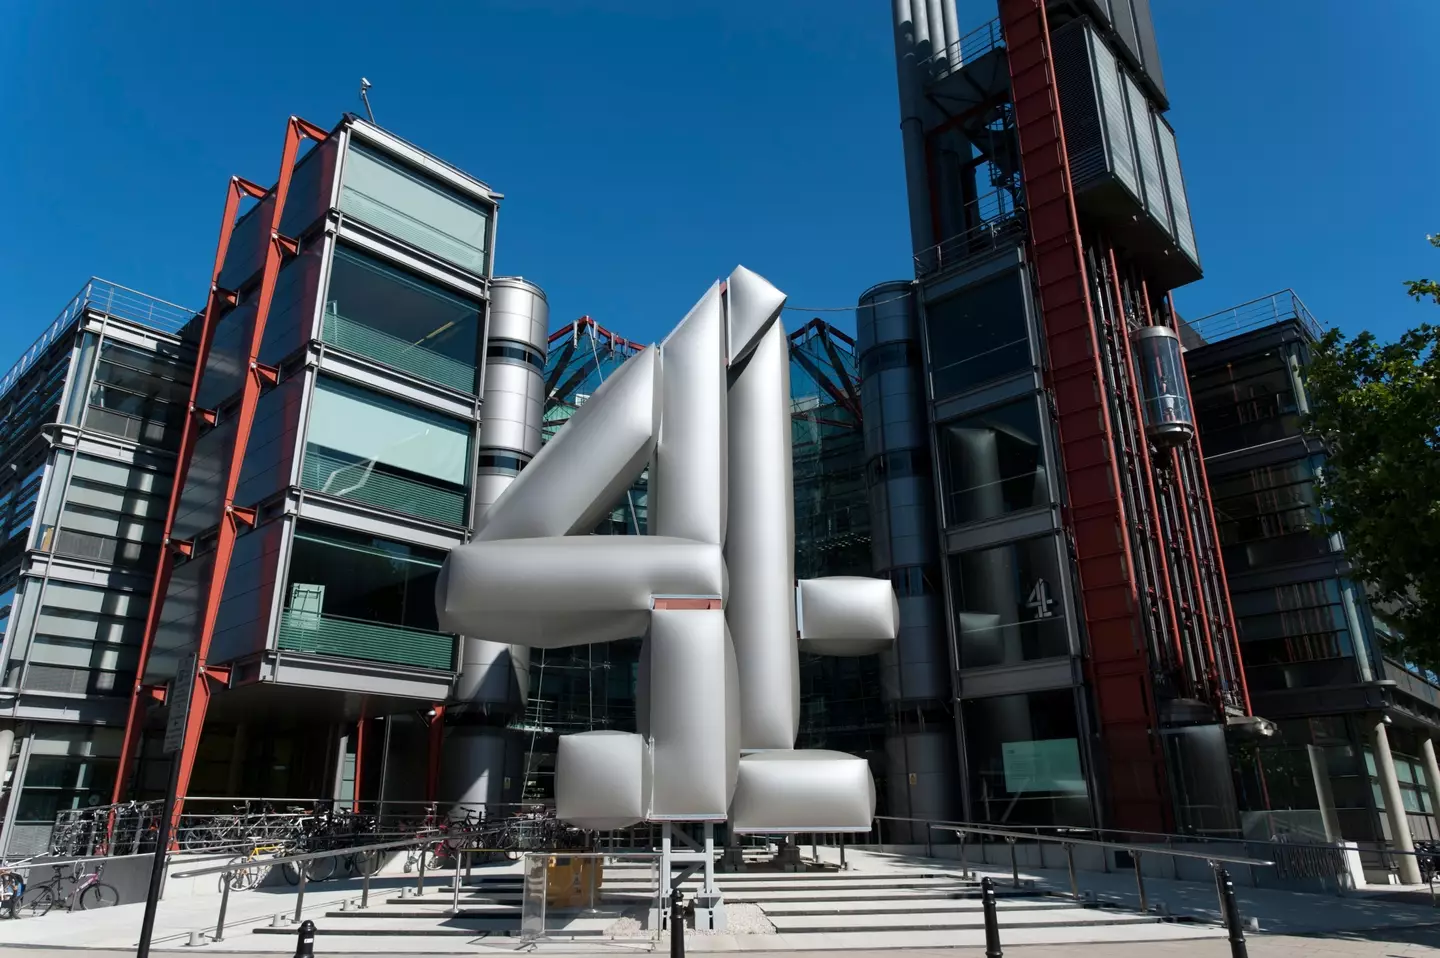 Channel 4 headquarters in London.